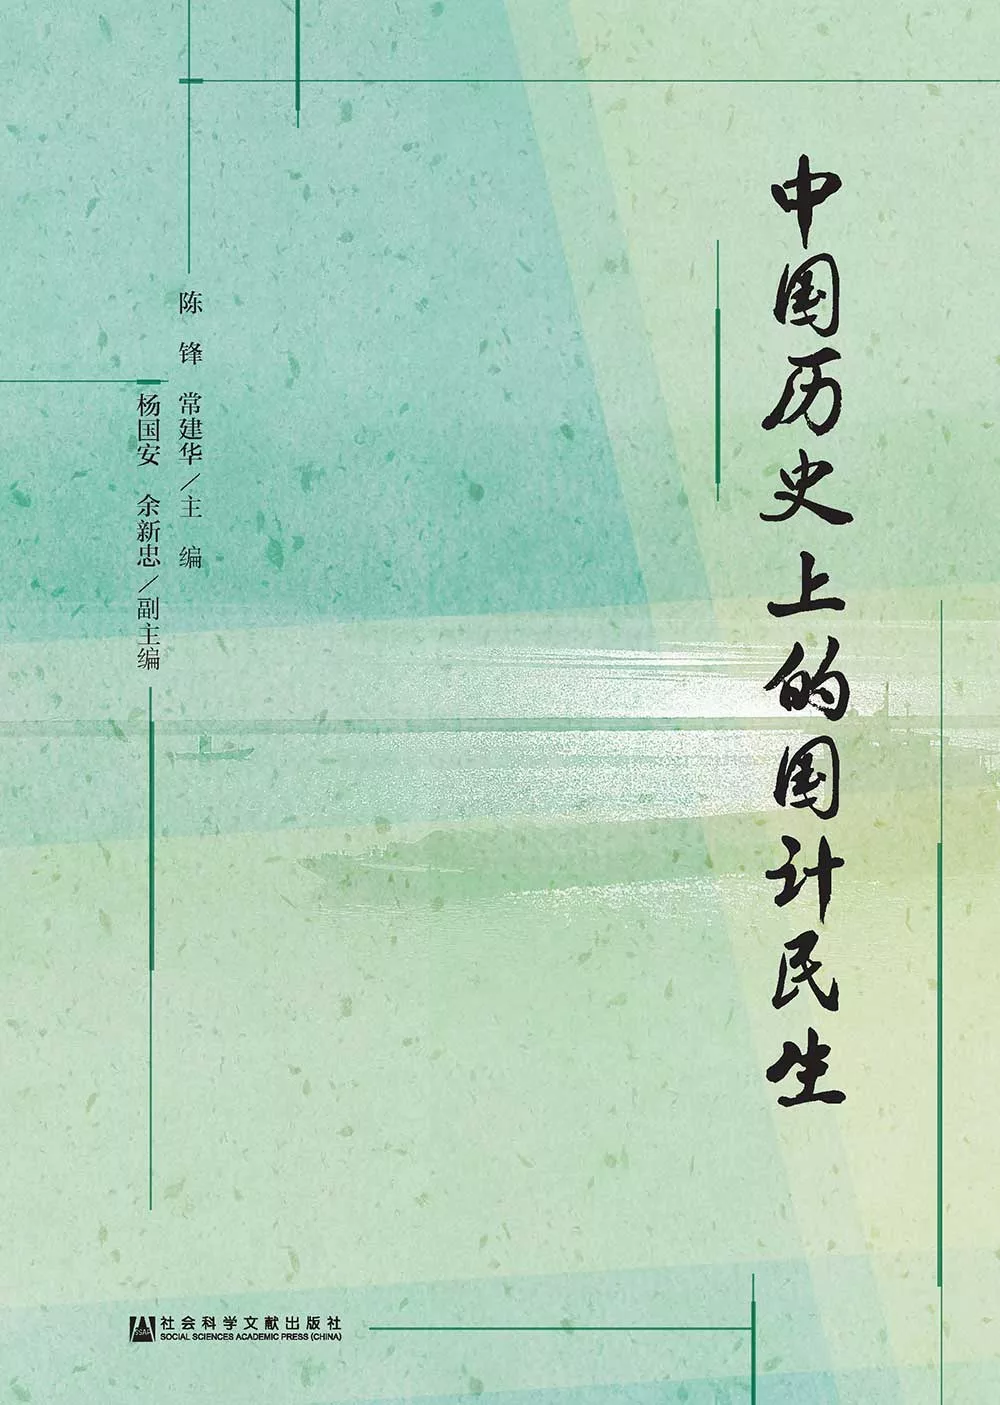 中國歷史上的國計民生(簡體版) (電子書)